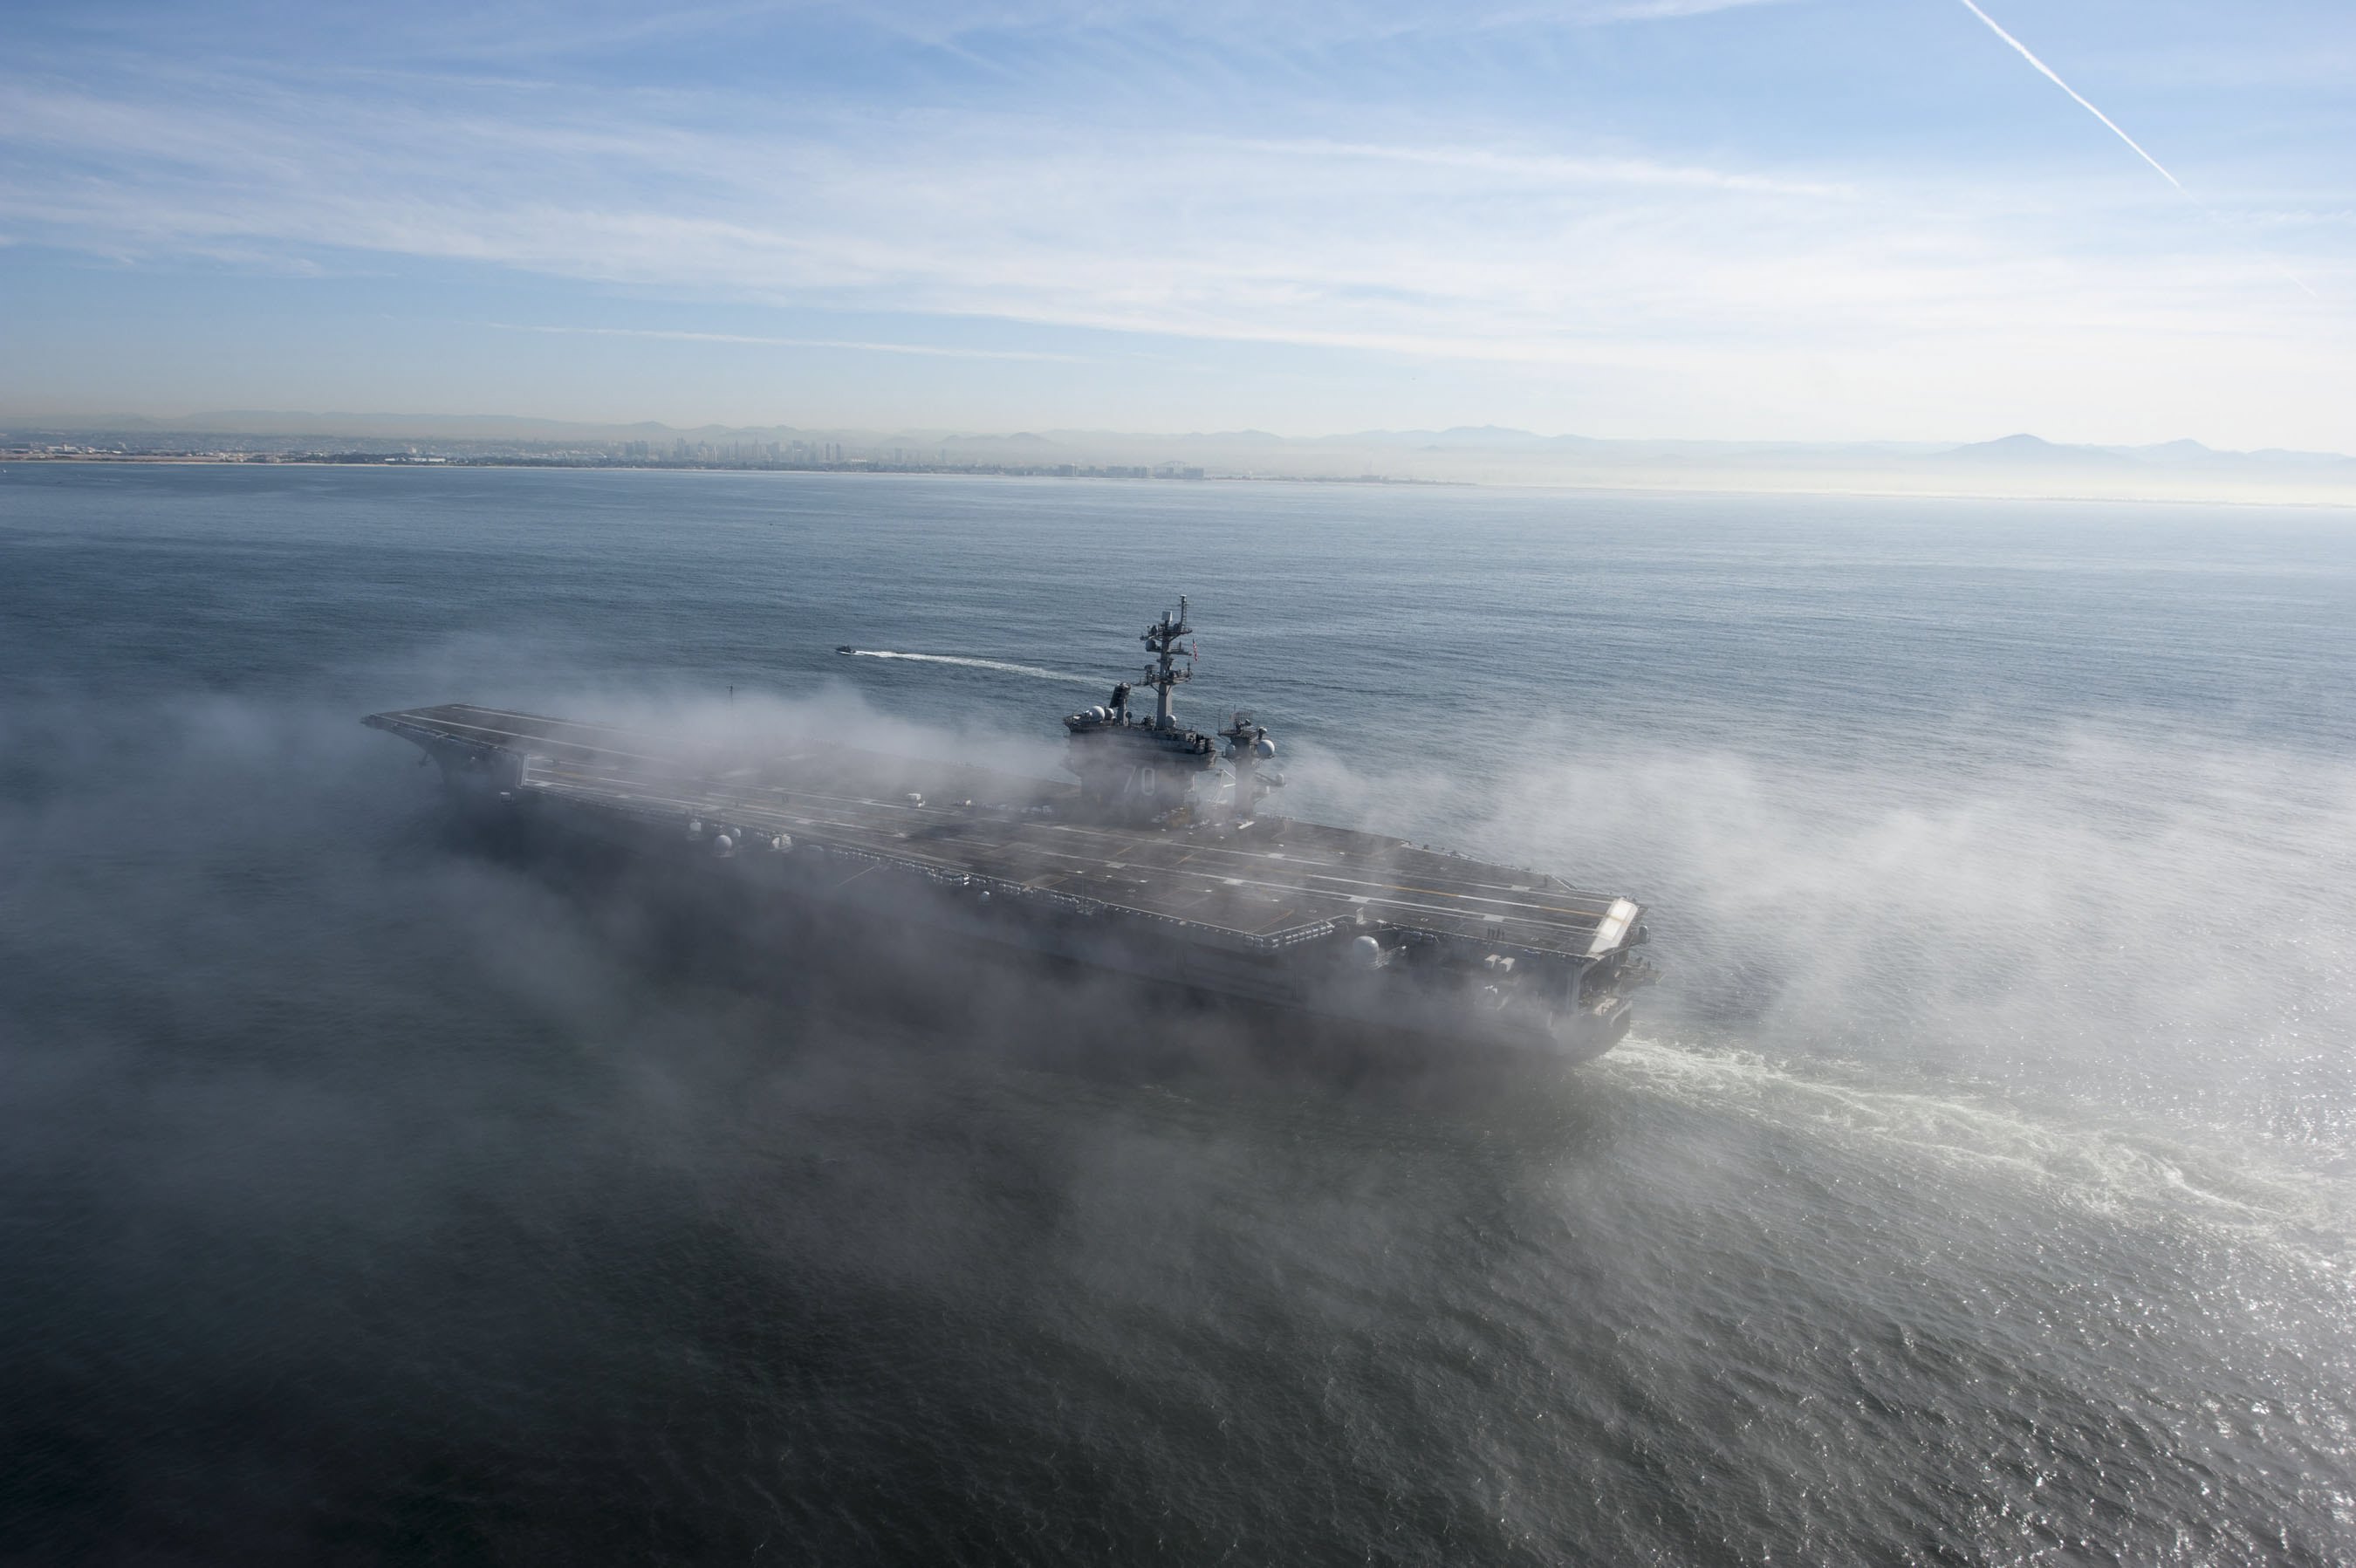 Αμερικανικά πολεμικά πλοία στη χερσόνησο της Κορέας